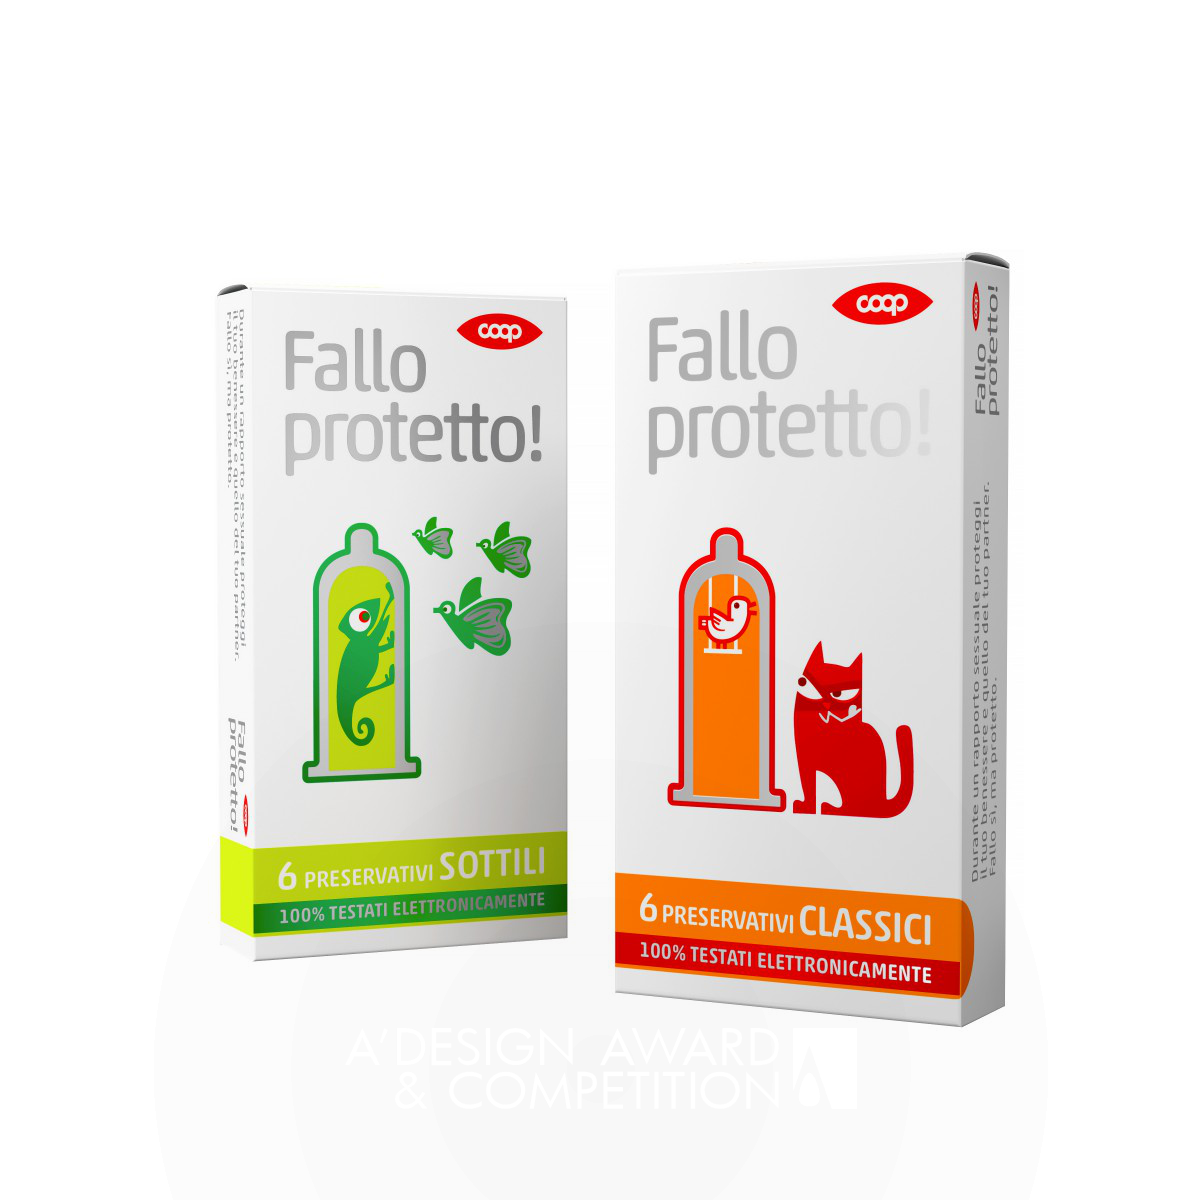 Fallo protetto! Condom by Rossetti Brand Design